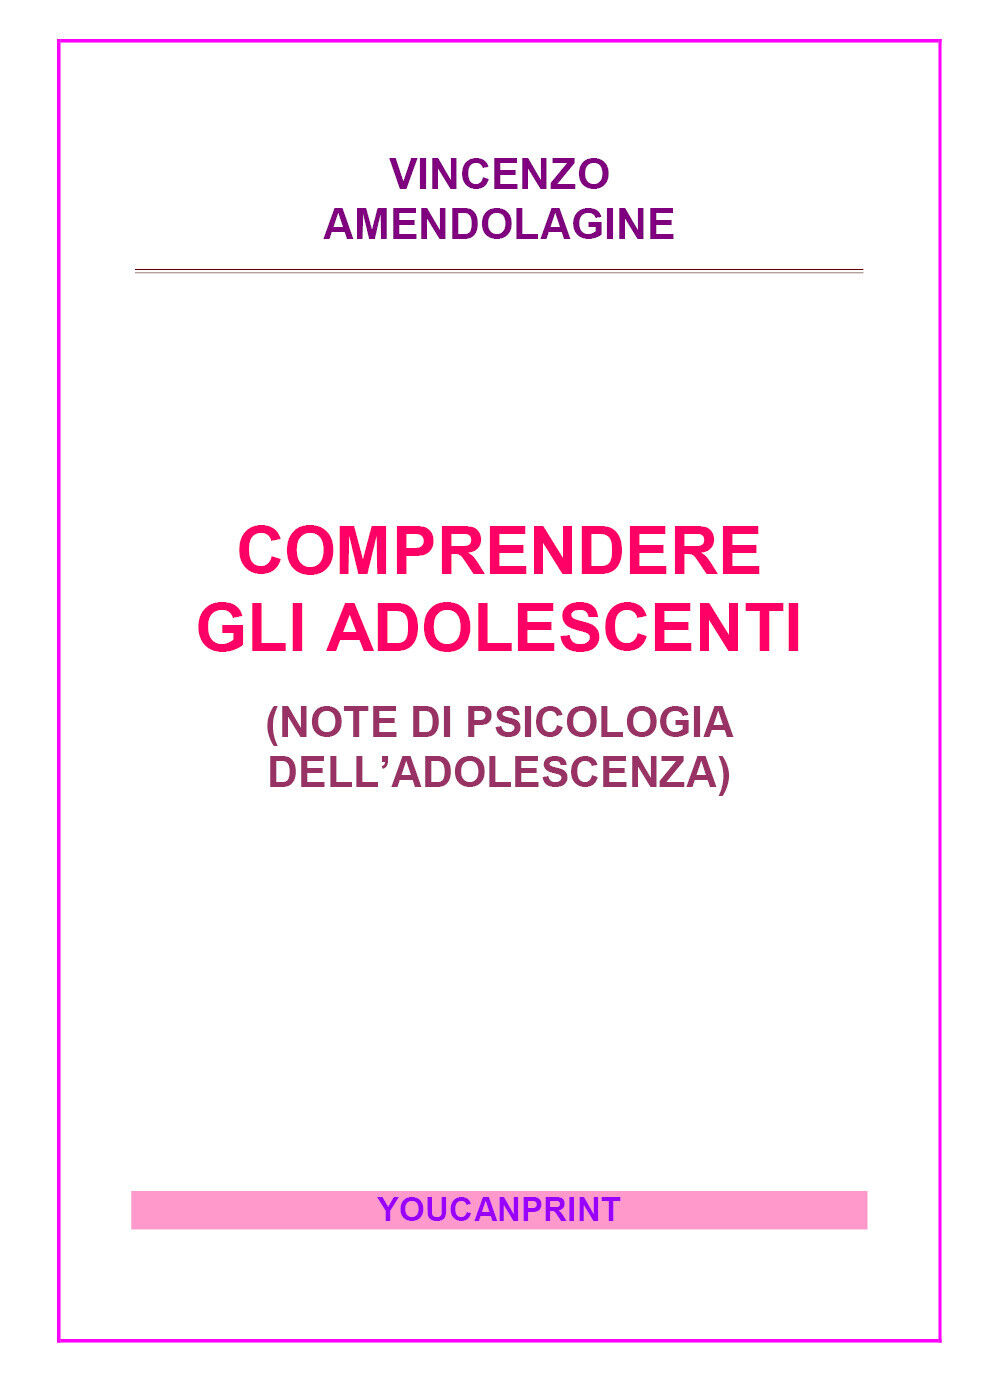 Comprendere gli adolescenti - Vincenzo Amendolagine,  2017,  Youcanprint